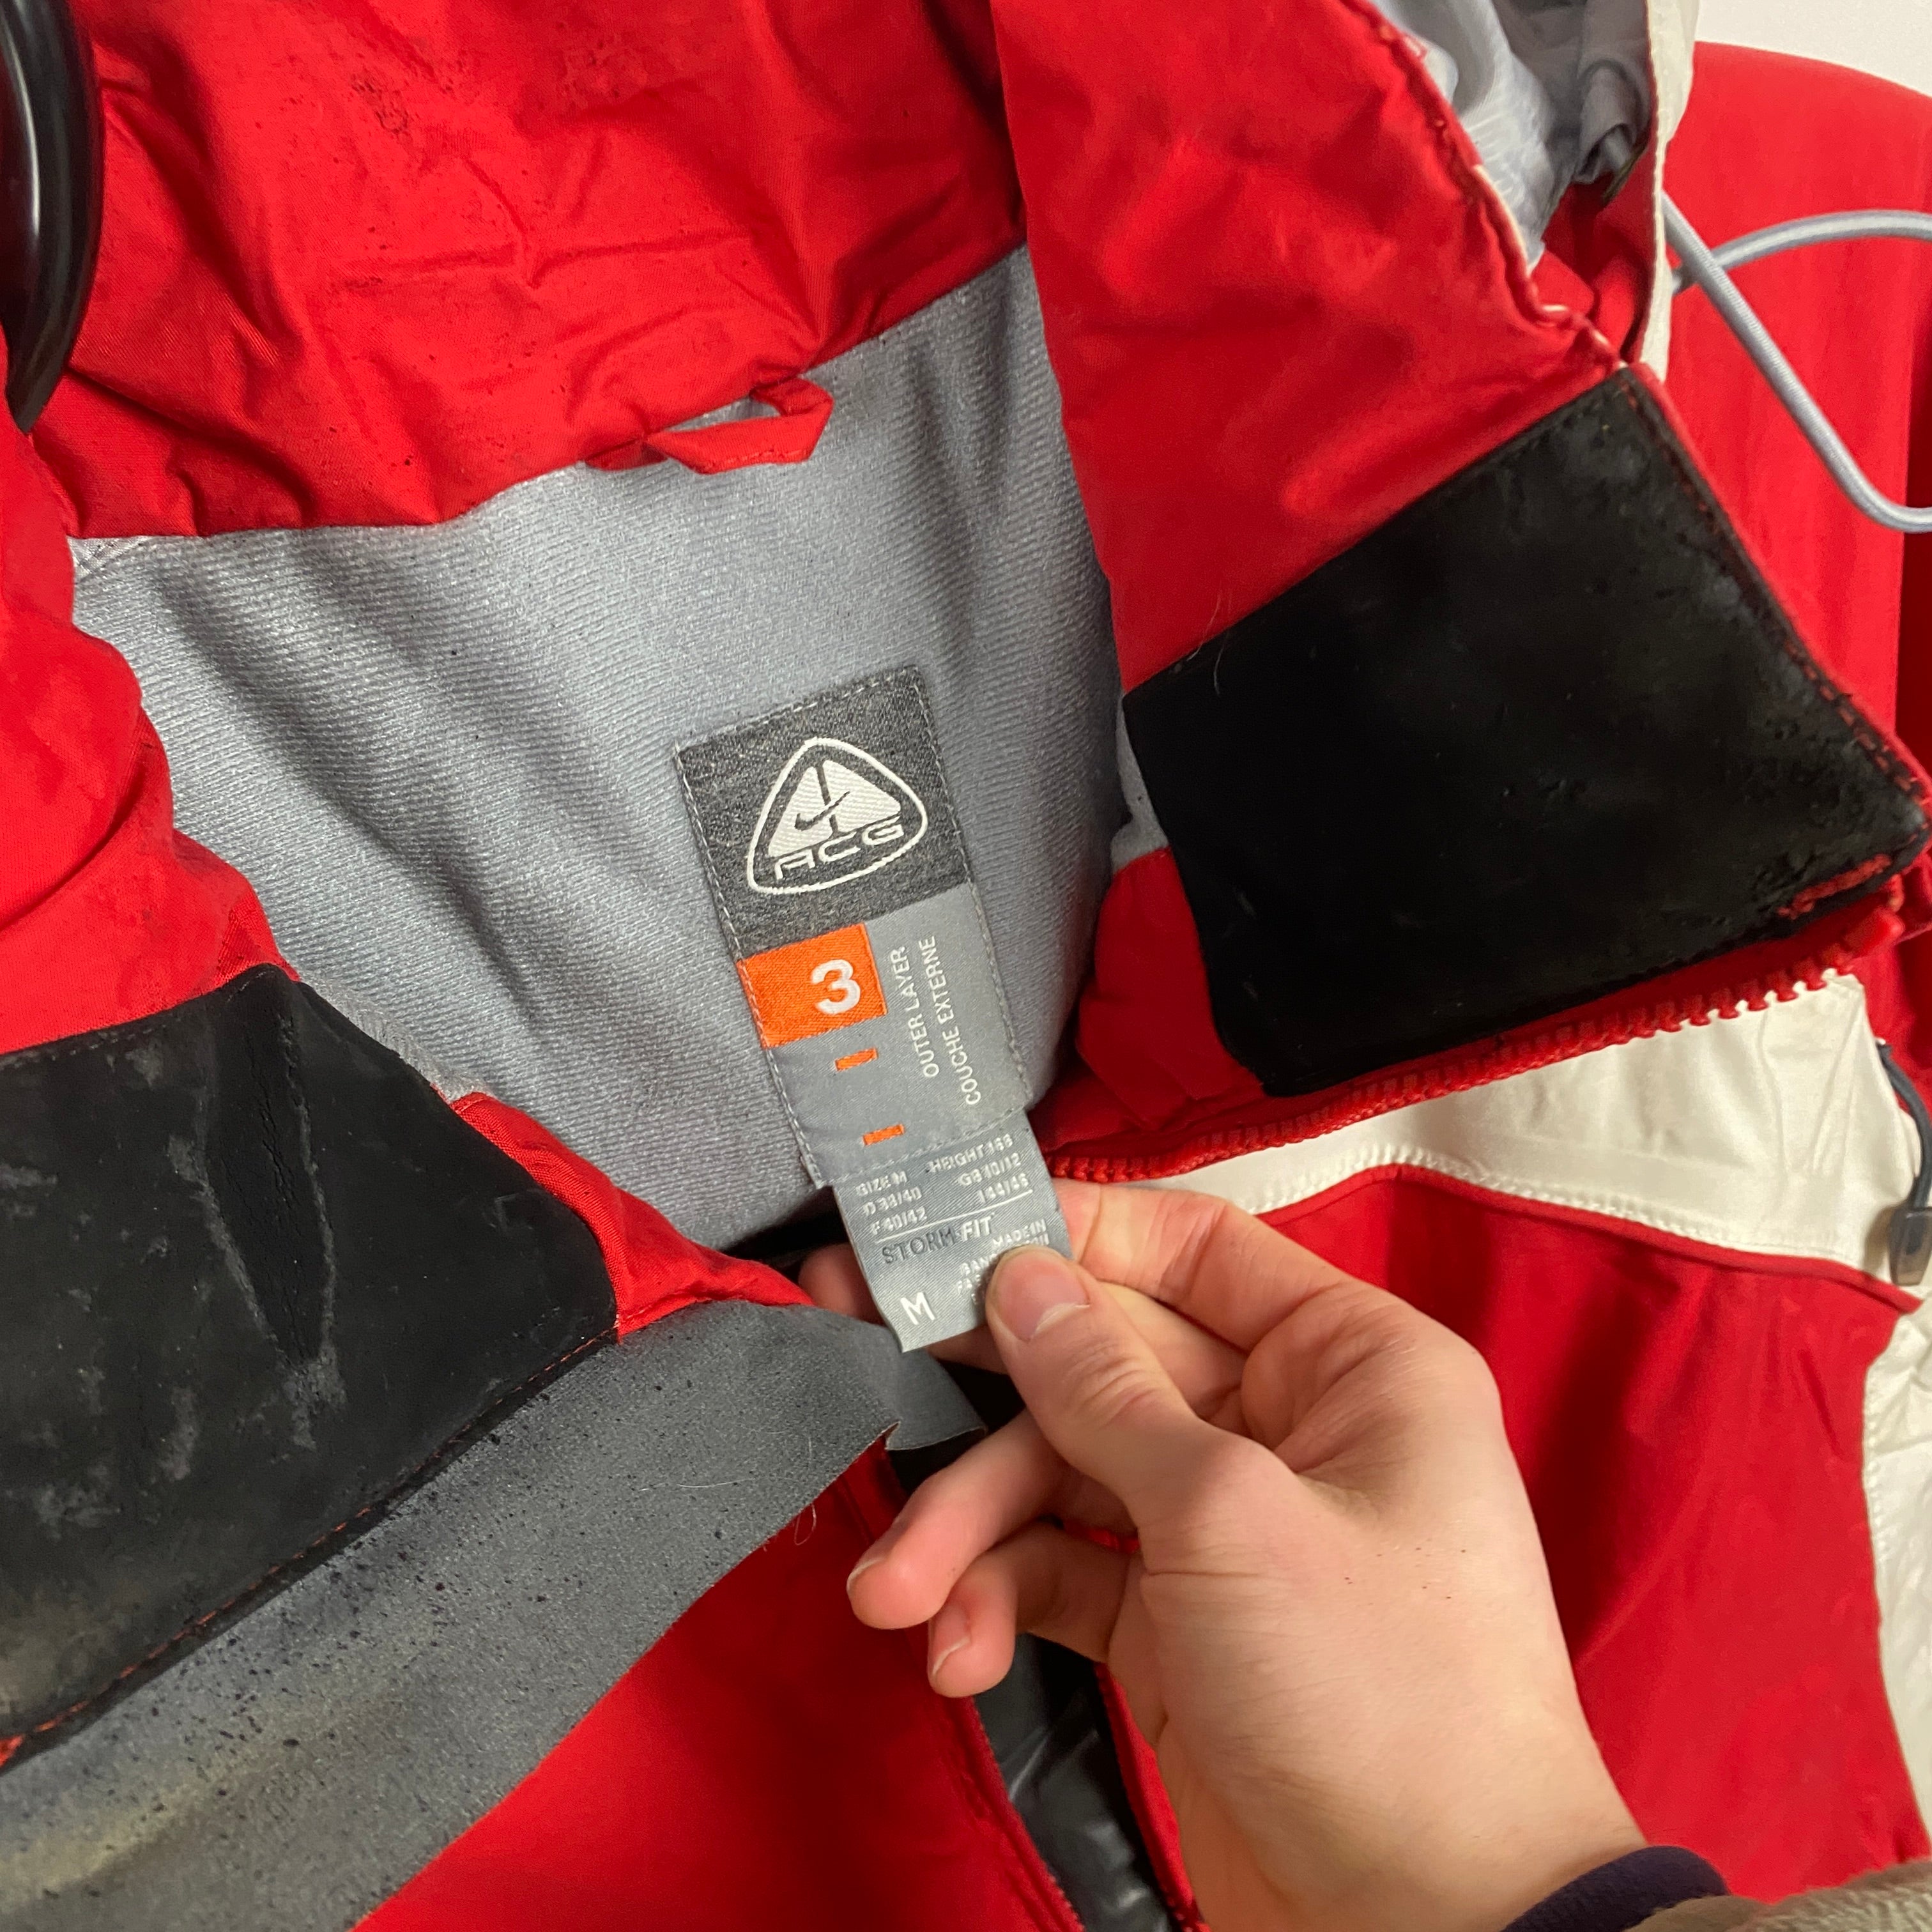 00s Nike ACG Waterproof Coat Jacket Red Womens Medium